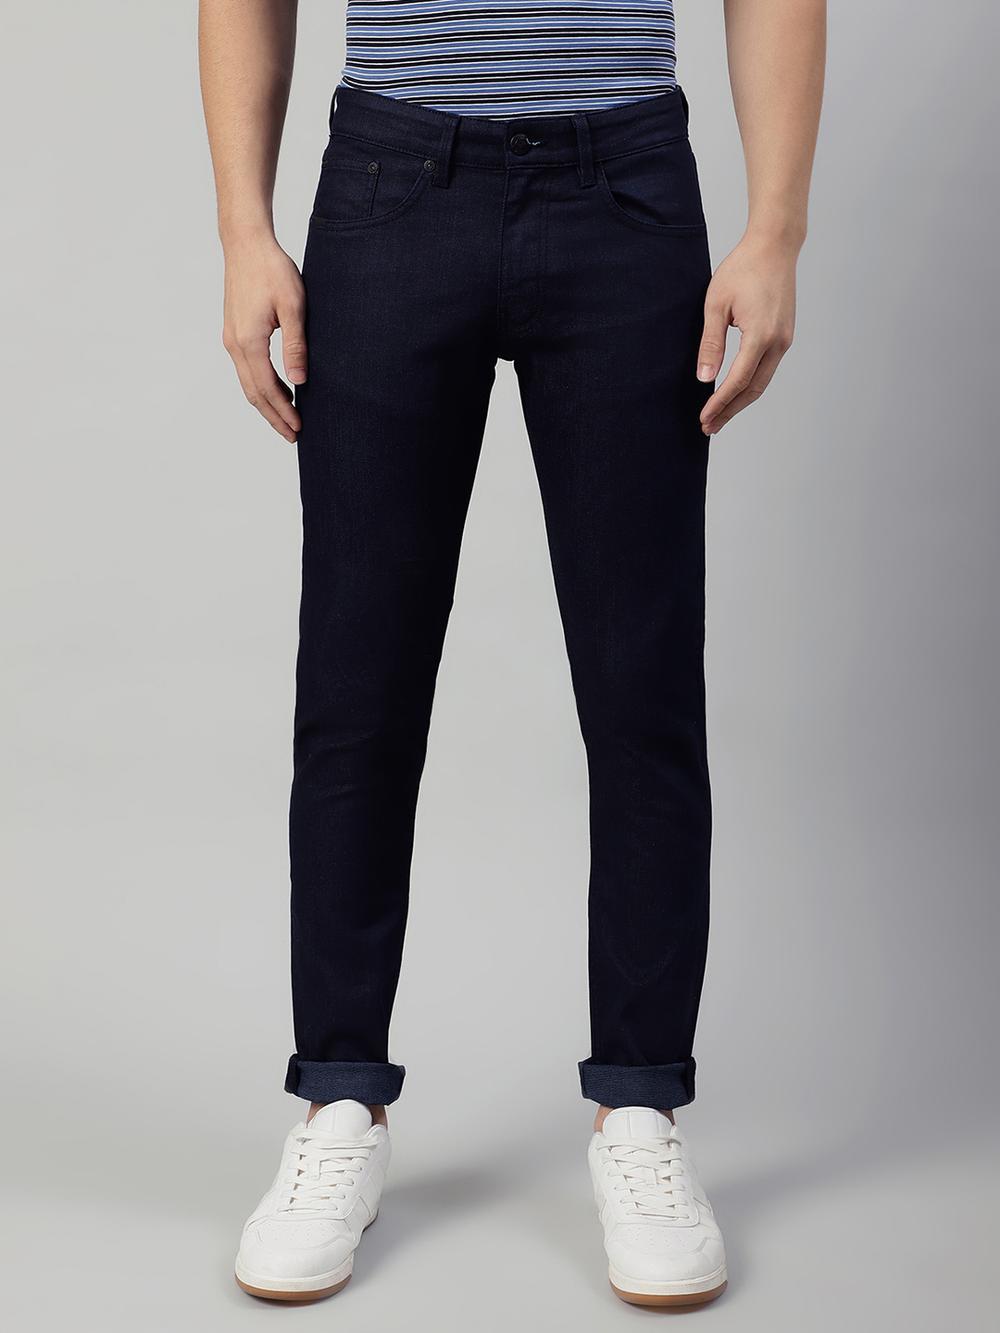 navy blue solid regular fit jeans